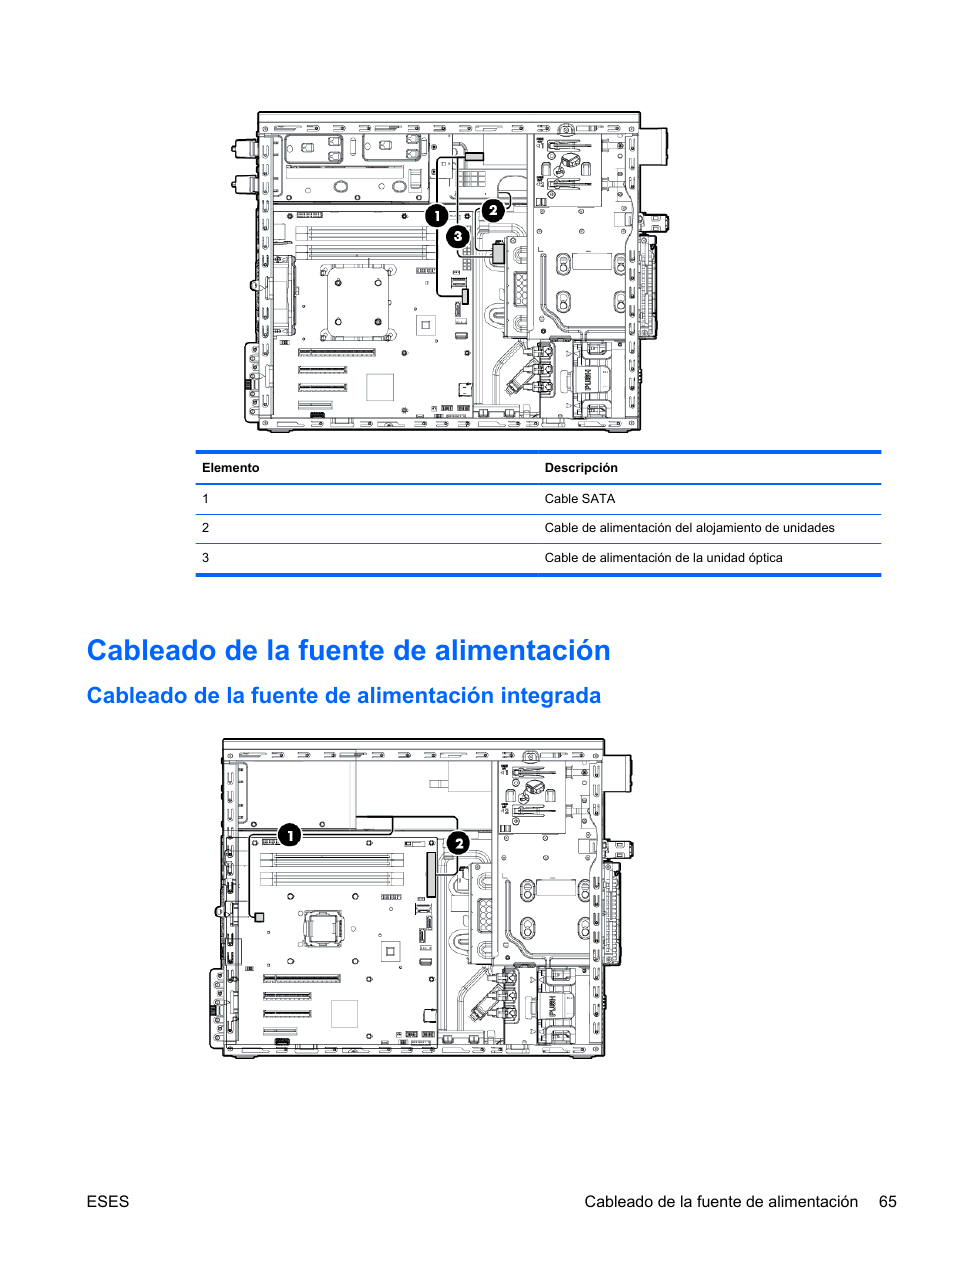 Cableado de la fuente de alimentación, Cableado de la fuente de alimentación integrada | HP Servidor HP ProLiant ML310e Gen8 v2 Manual del usuario | Página 72 / 105